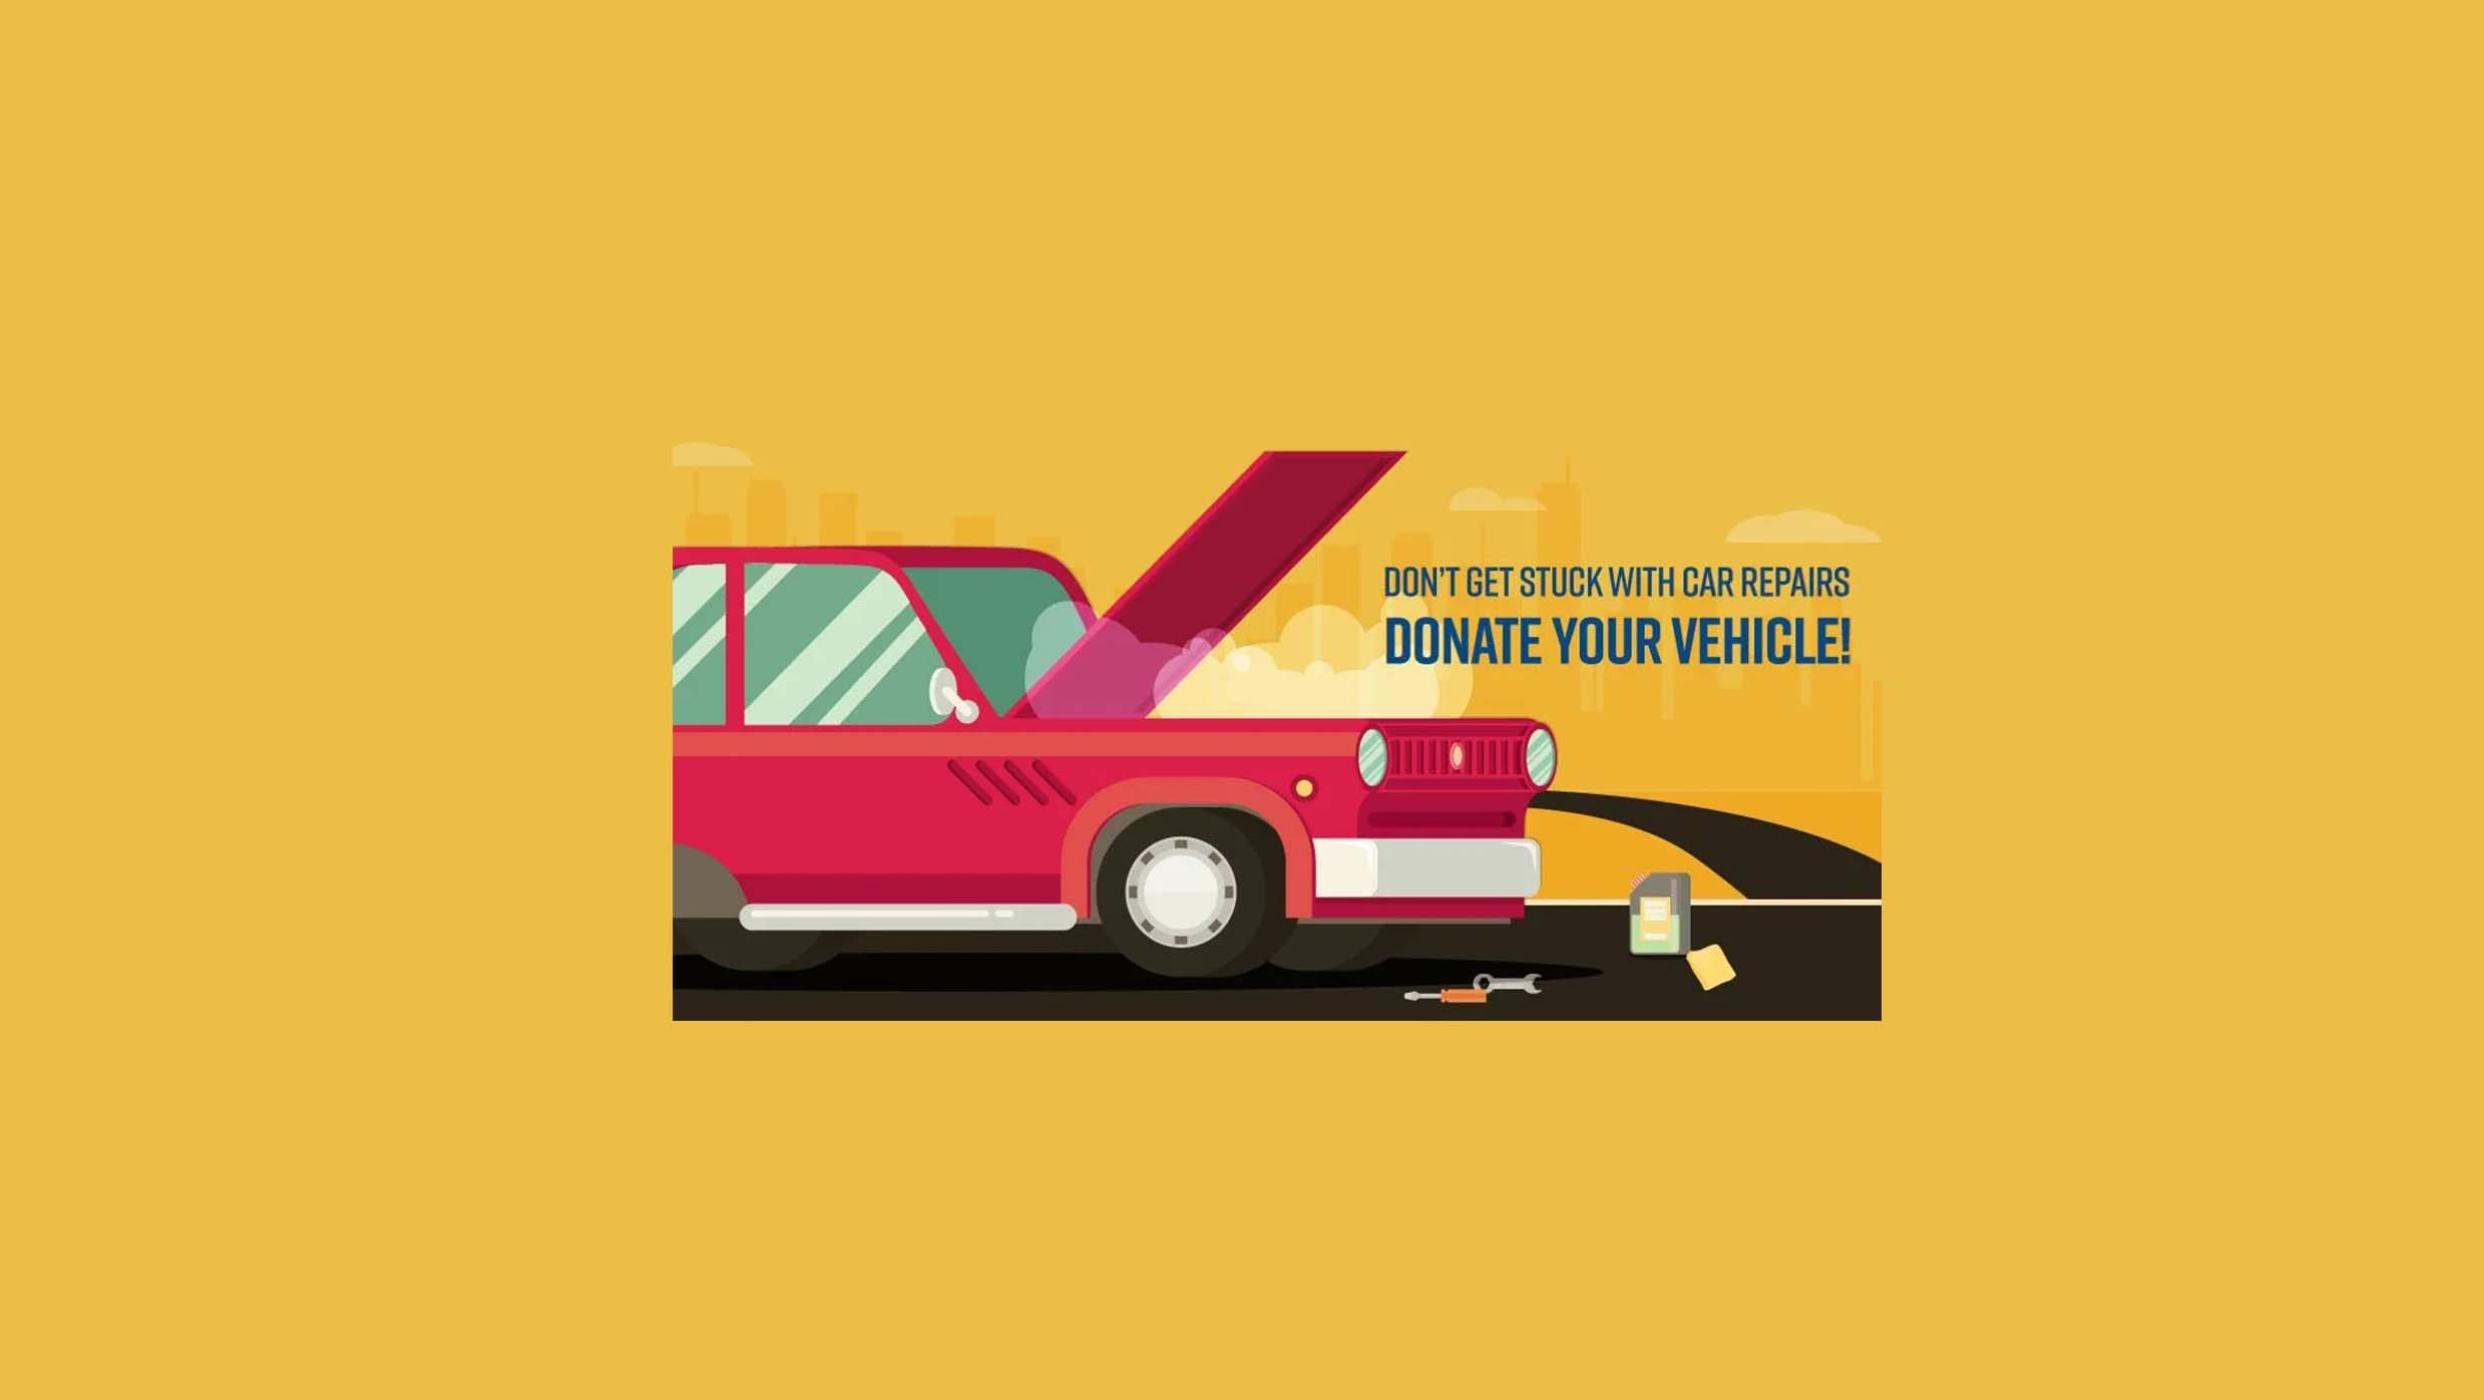 Vehicle Donation Program